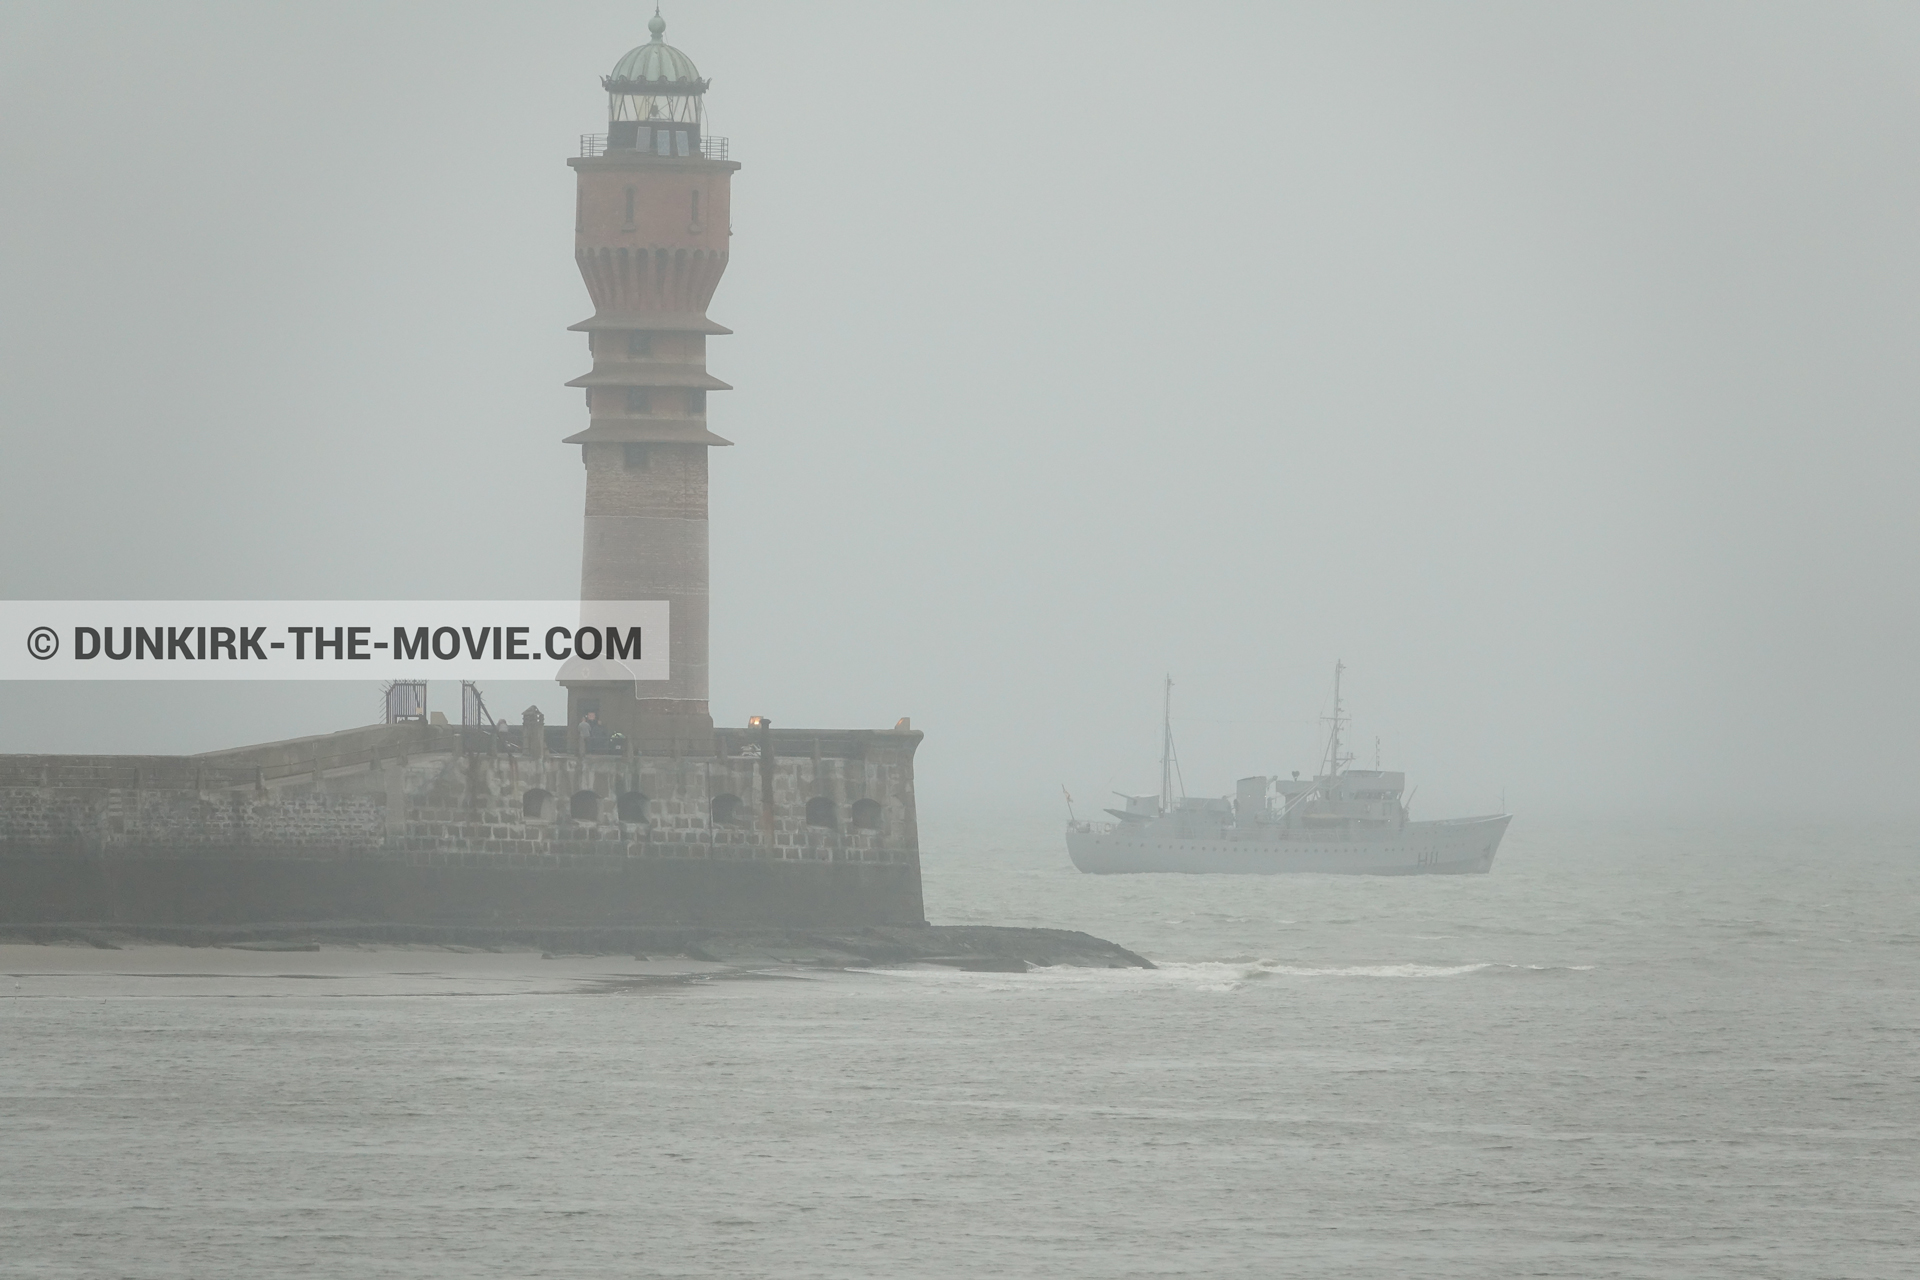 Fotos con barco, cielo gris, mares calma, faro de Saint-Pol-sur-Mer,  durante el rodaje de la película Dunkerque de Nolan